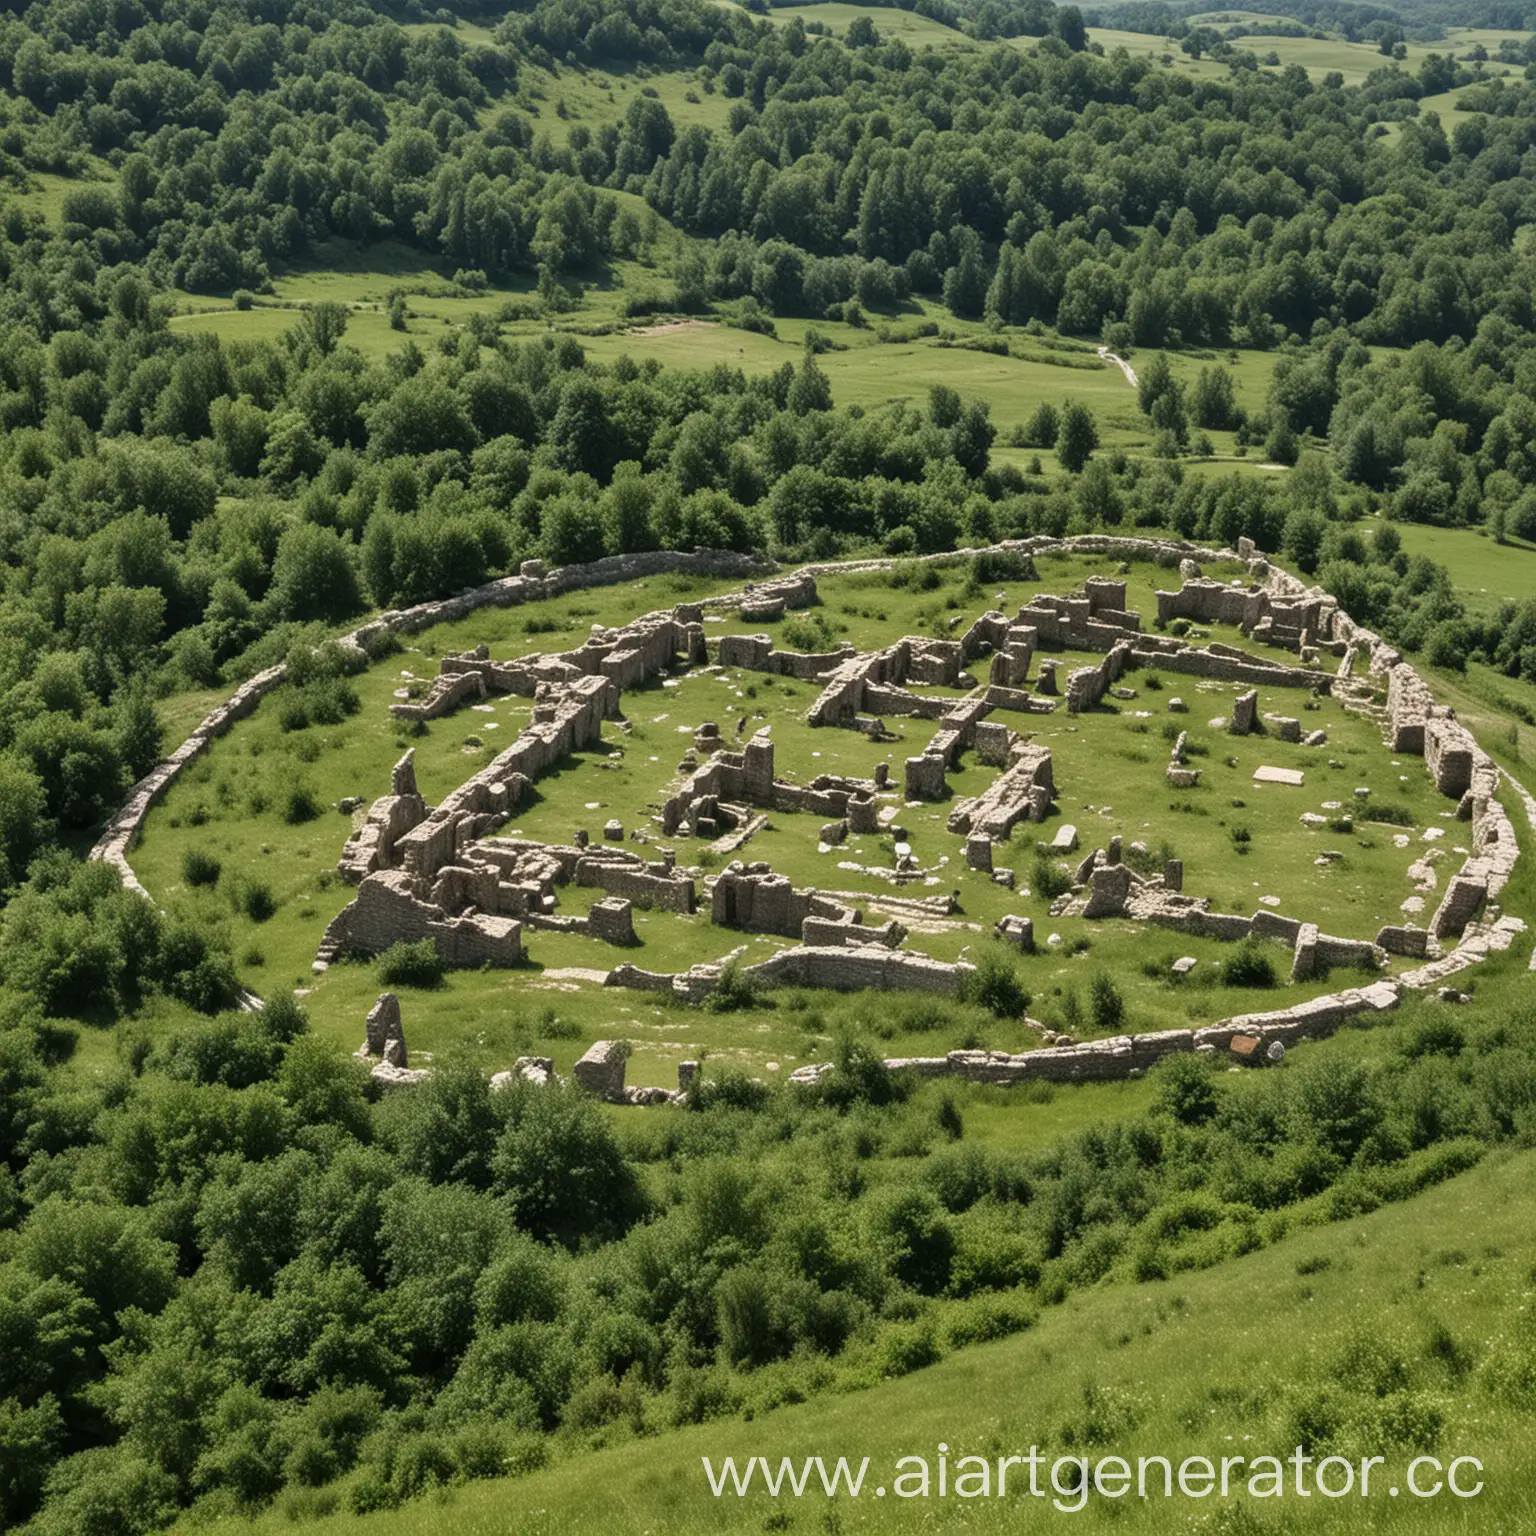 близ села Ташлы, в горах, сохранились развалины древняго города Ташлы, о котором упоминается в летописи 441 года;